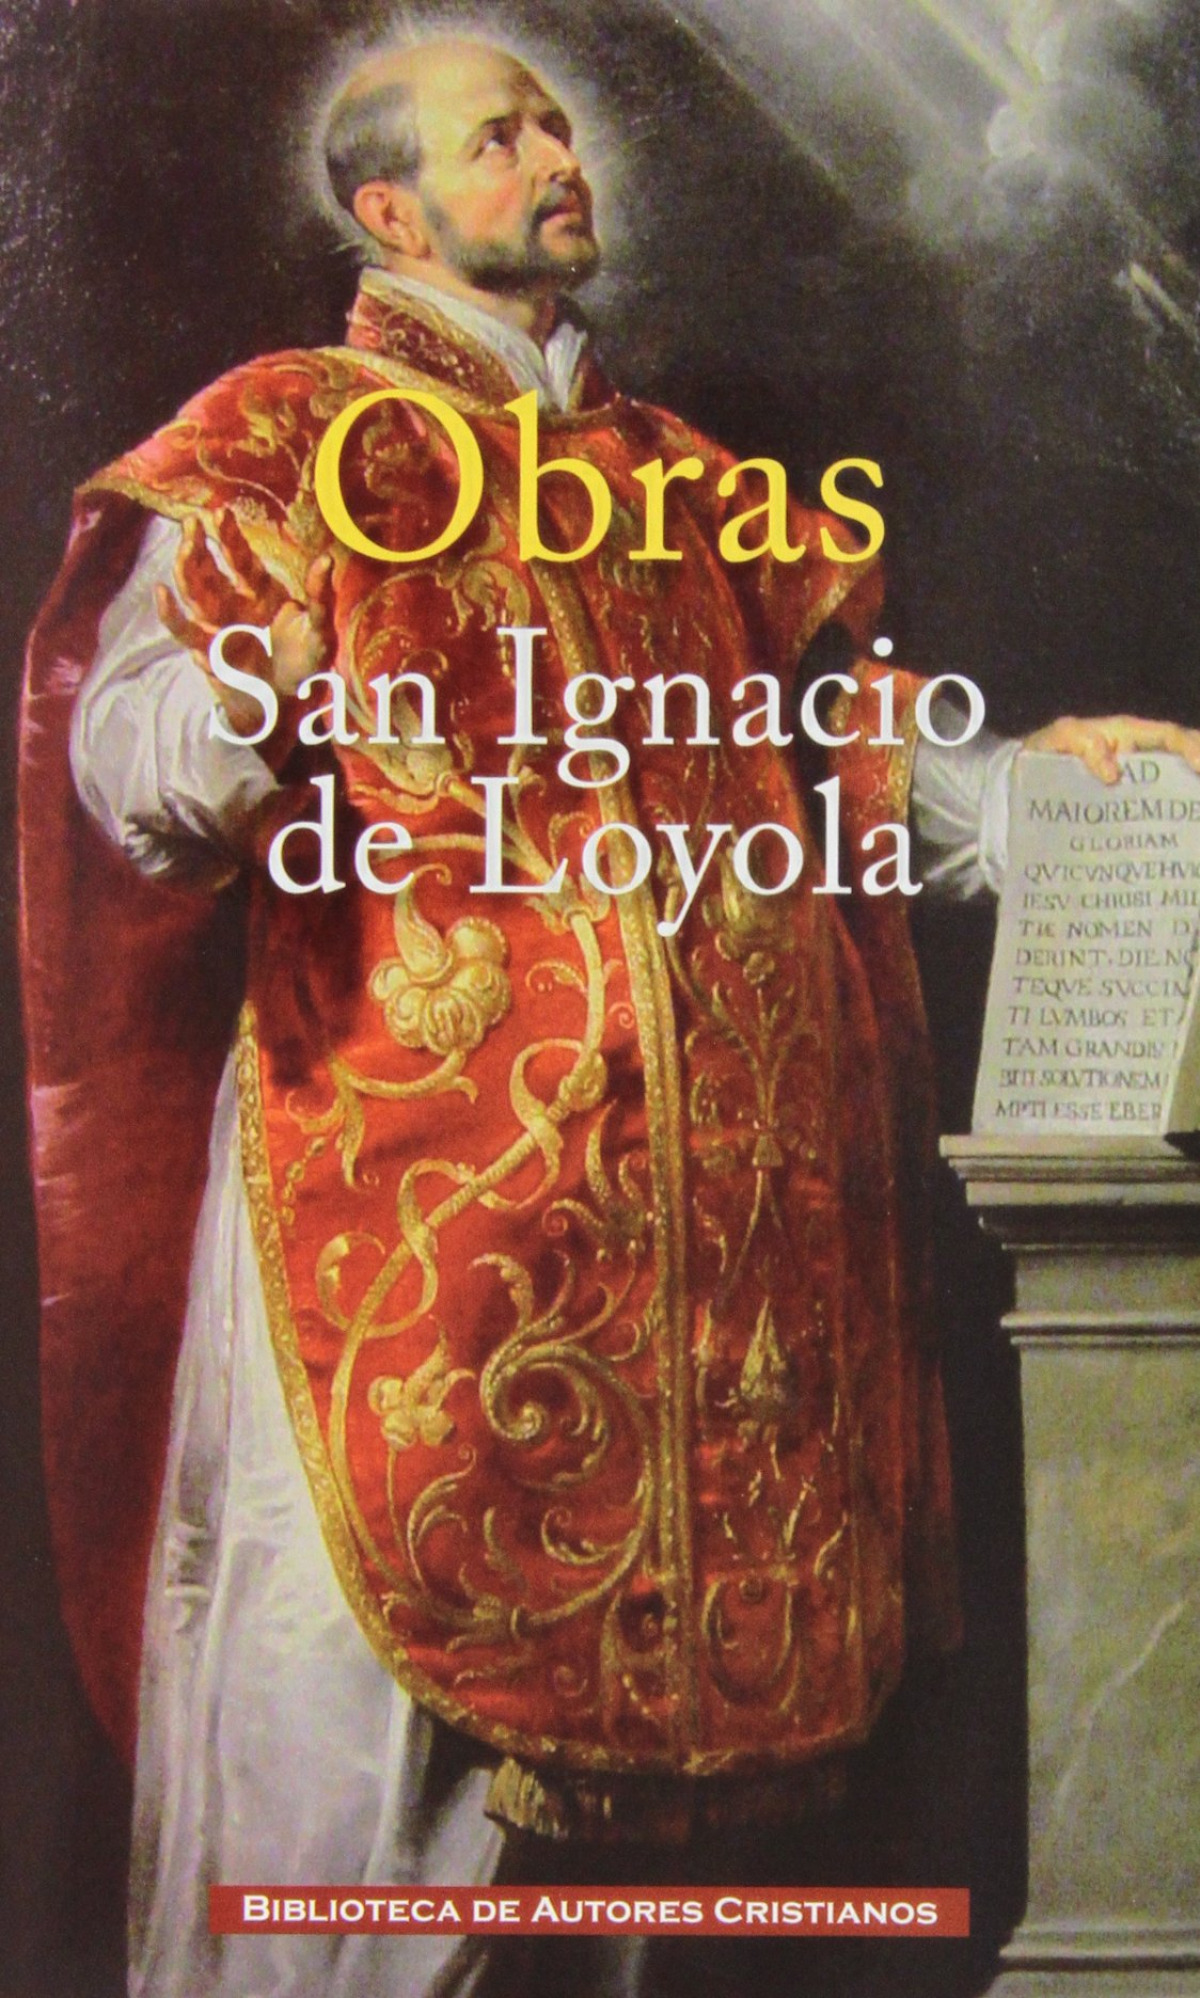 Obras:San Ignacio de Loyola - De Loyola, San Ignacio